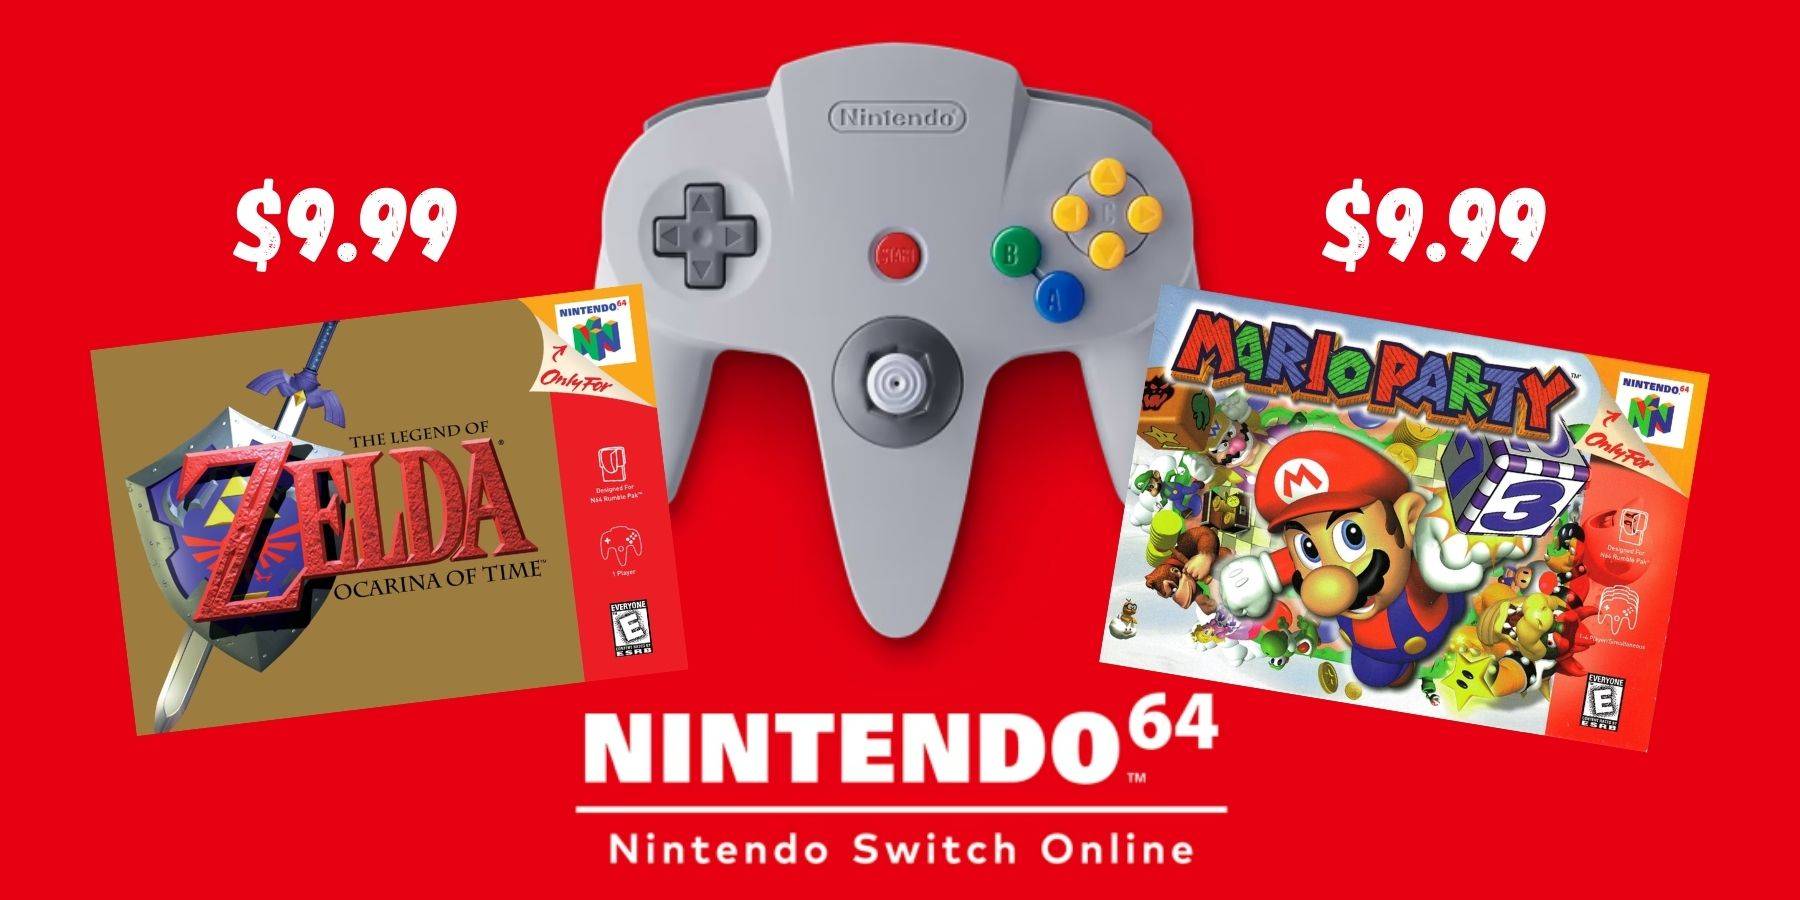 64 udvidelse pak n64 Mario nintendo skifte online pris